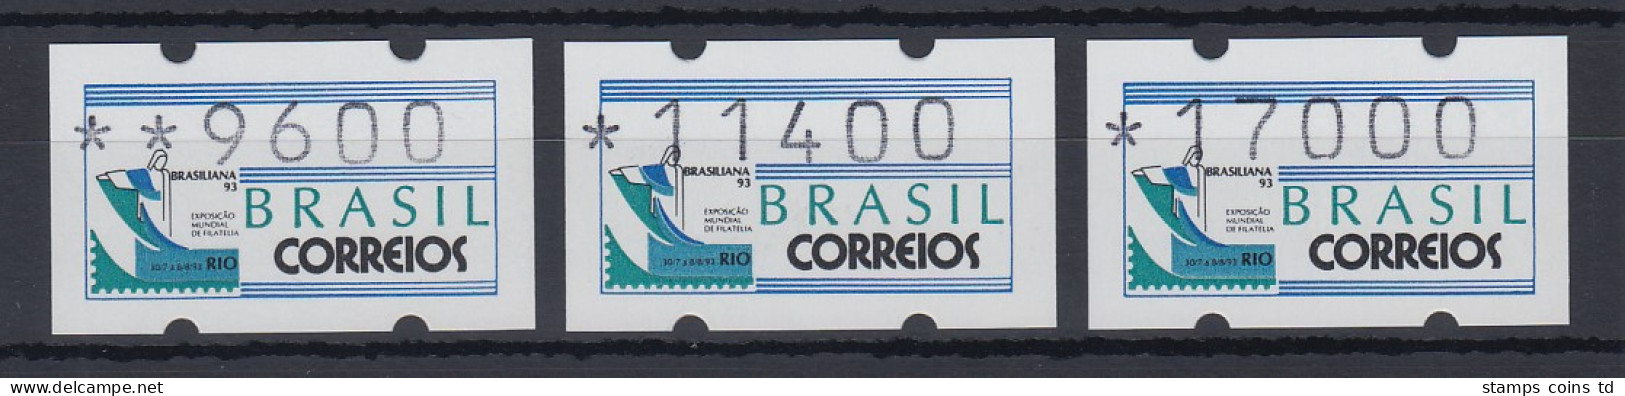 Brasilien 1993 Sonder-ATM BRASILIANA'93, Mi.-Nr. 5, Satz 9600-11400-17000 ** - Frankeervignetten (Frama)